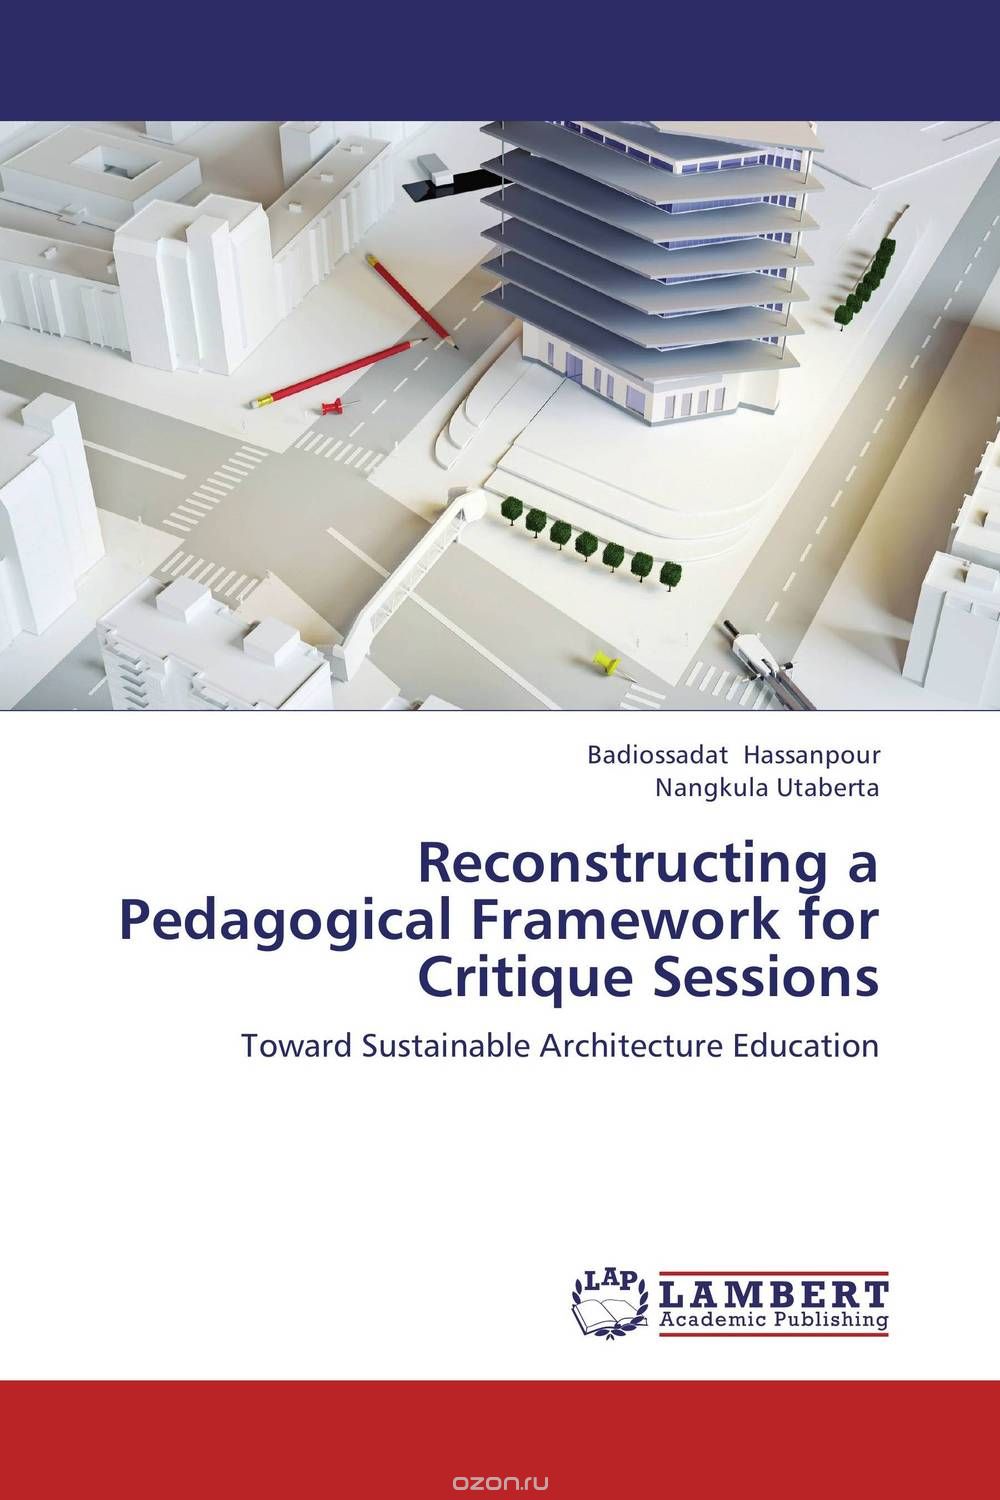 Скачать книгу "Reconstructing a Pedagogical Framework for Critique Sessions"